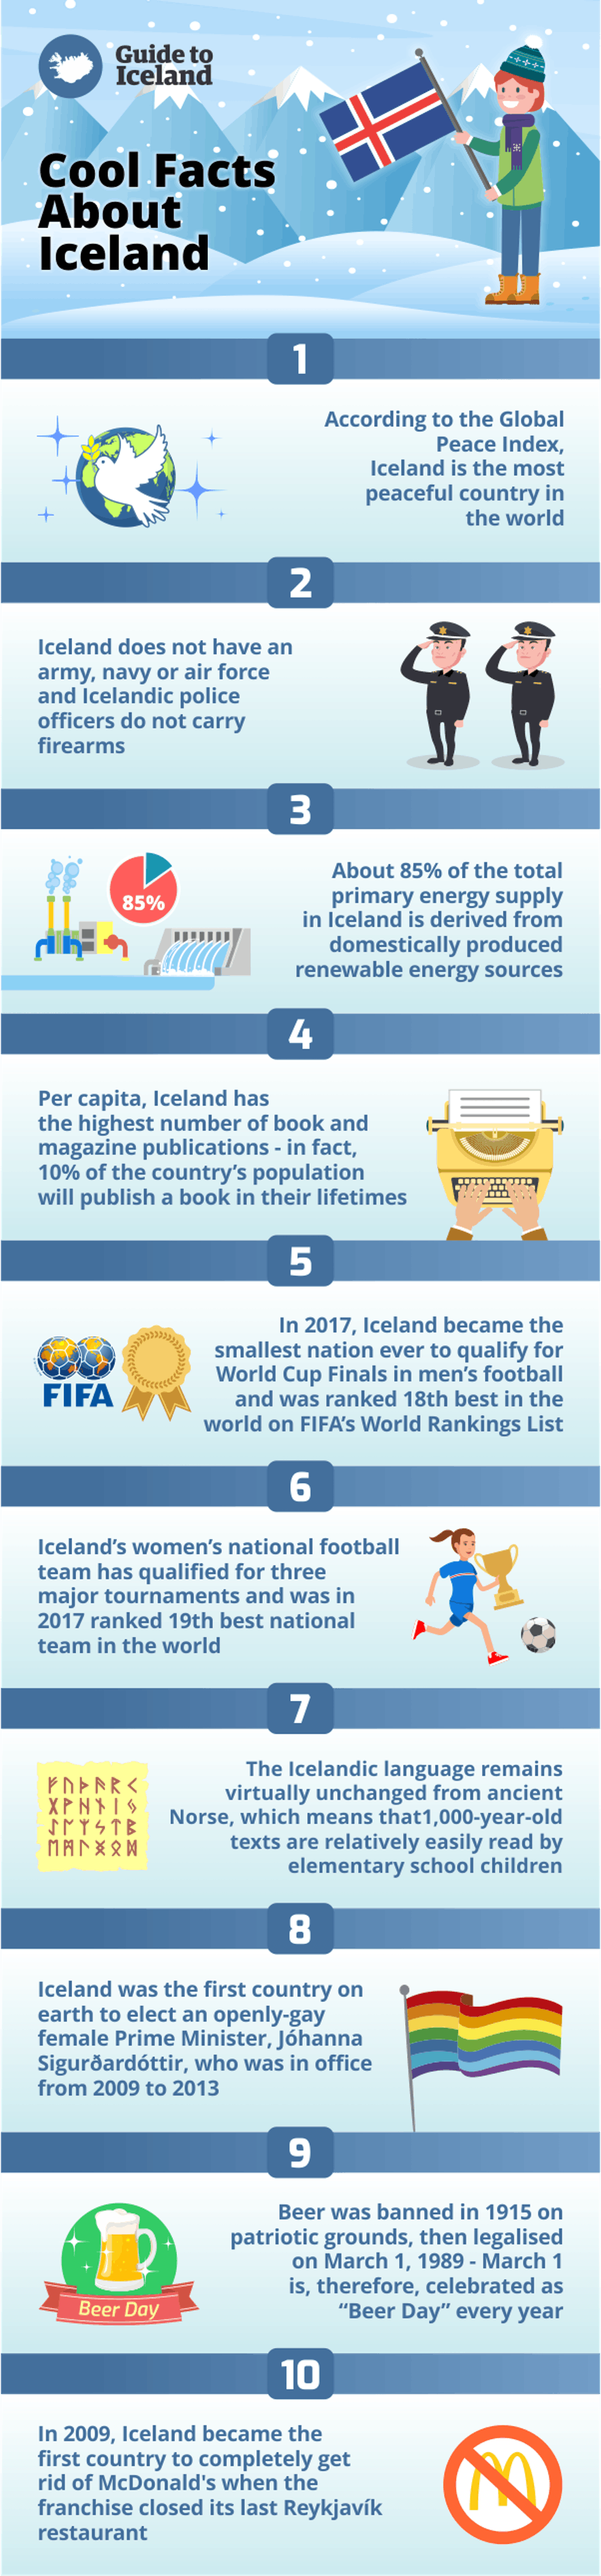 冰島10個很酷的Facts